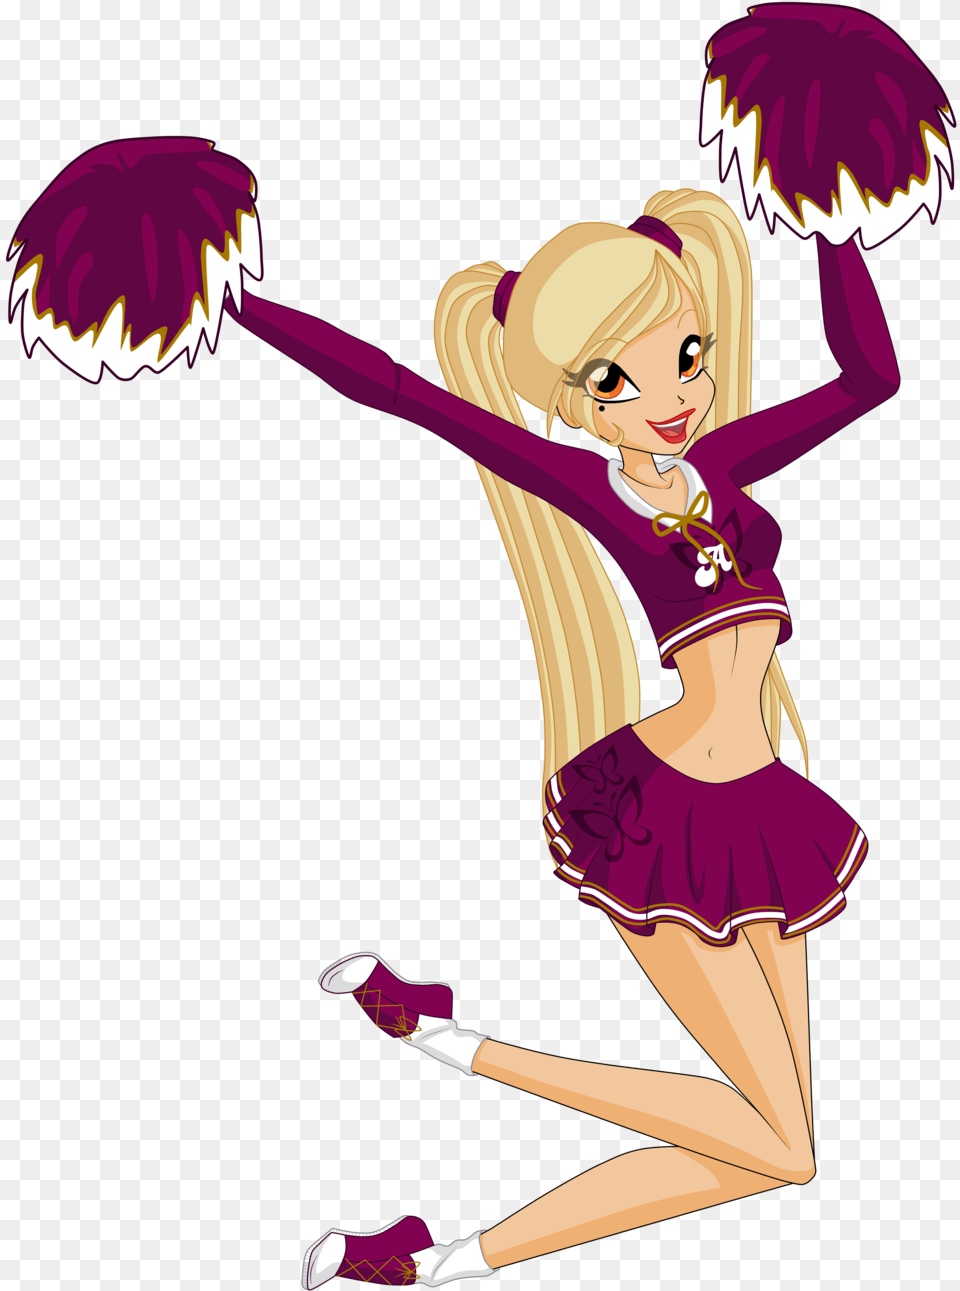 Jpg Cheerleaders Drawing Cheerleading Cartoon Drawing Of Cheerleader, Book, Comics, Dancing, Leisure Activities Free Png Download